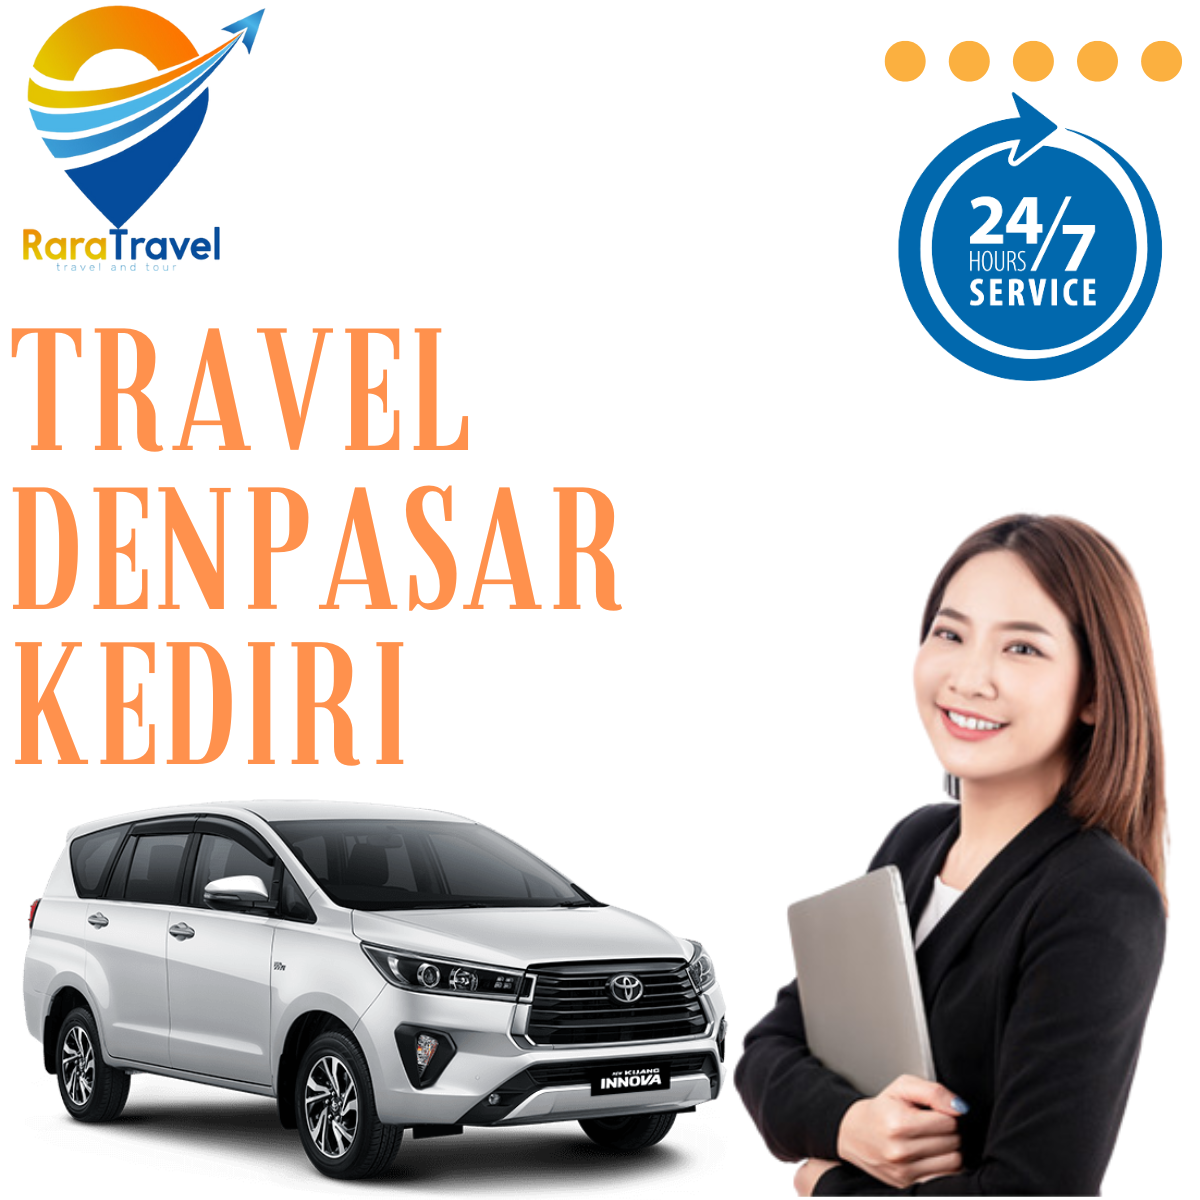 Travel Denpasar Kediri: Harga Ticket Murah dan Layanan PP 24 Jam